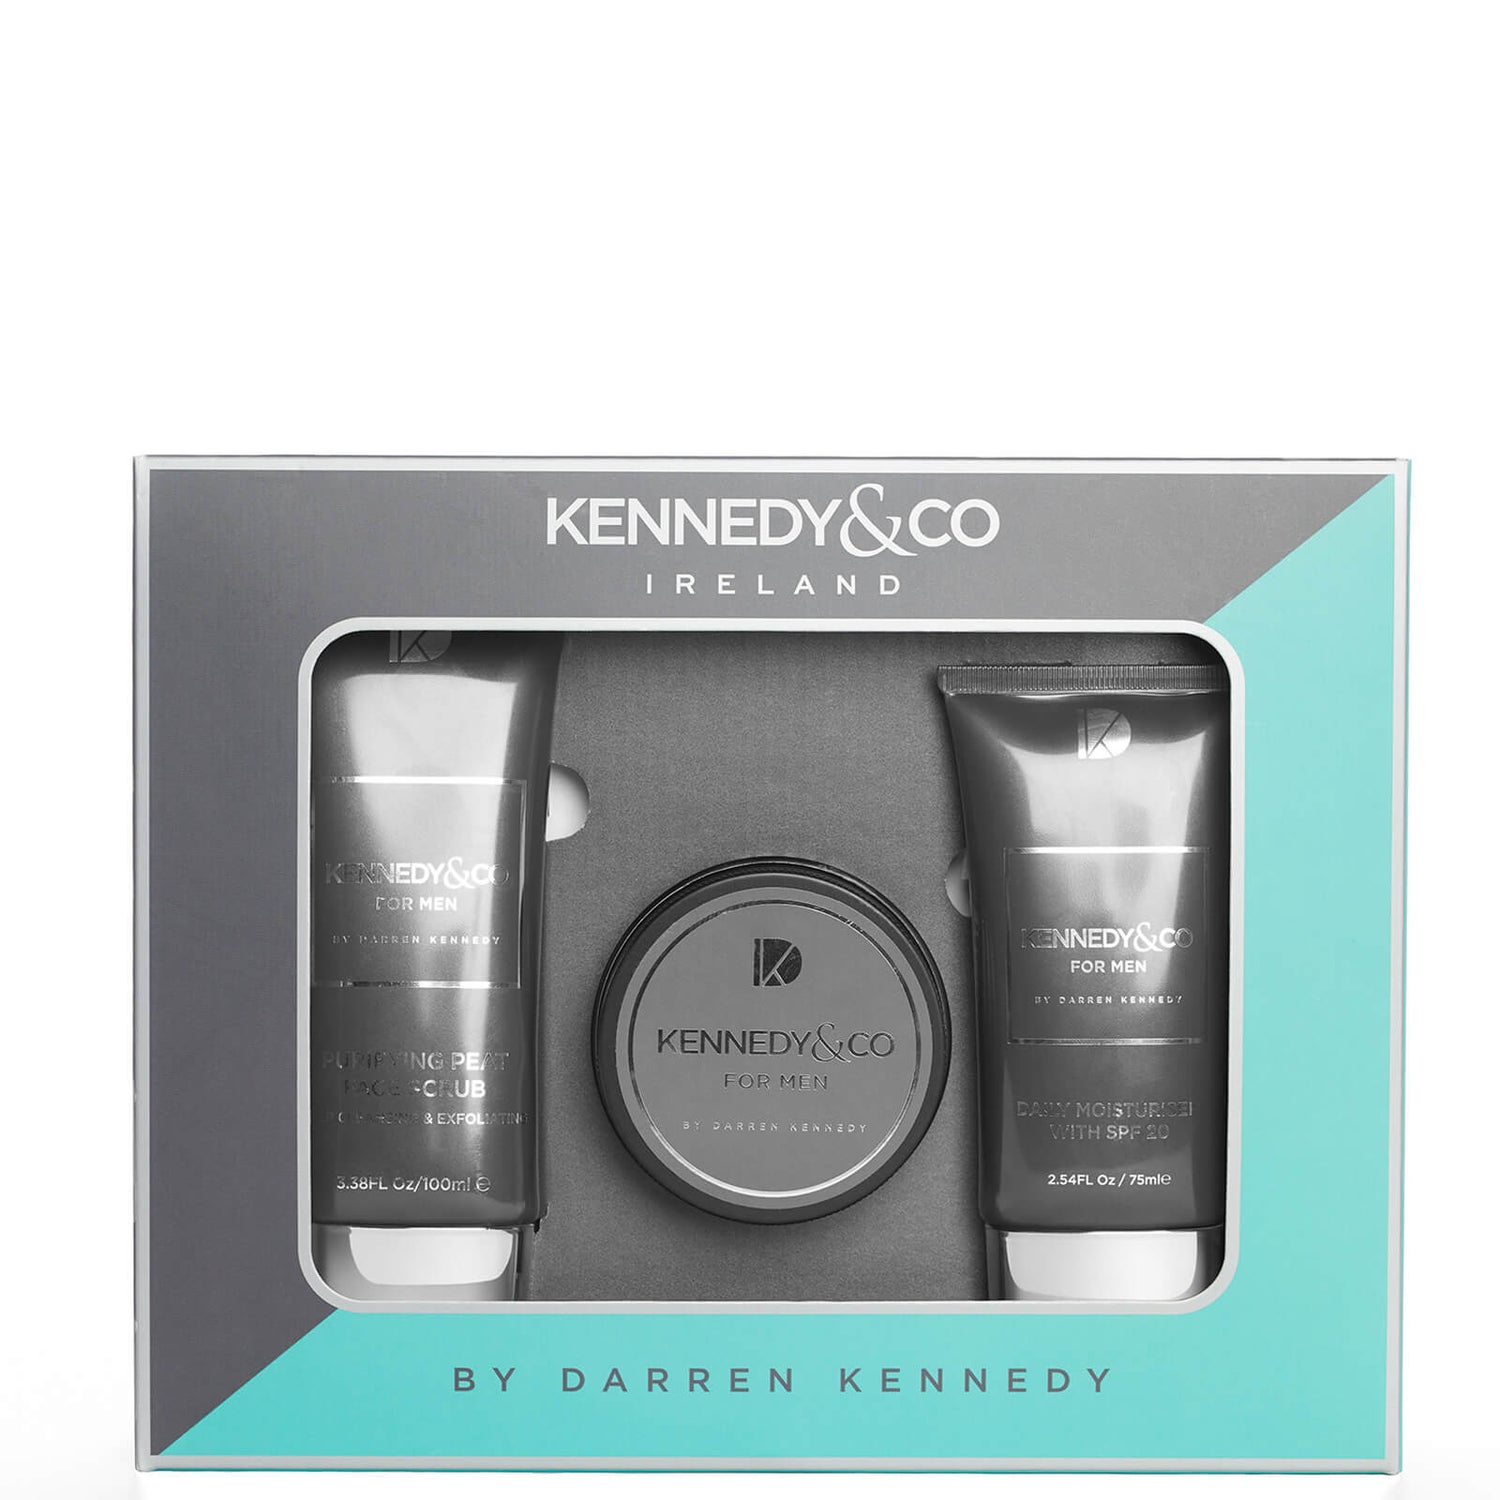 Kennedy & Co Gift Set 1 Trio (Worth £26.95)